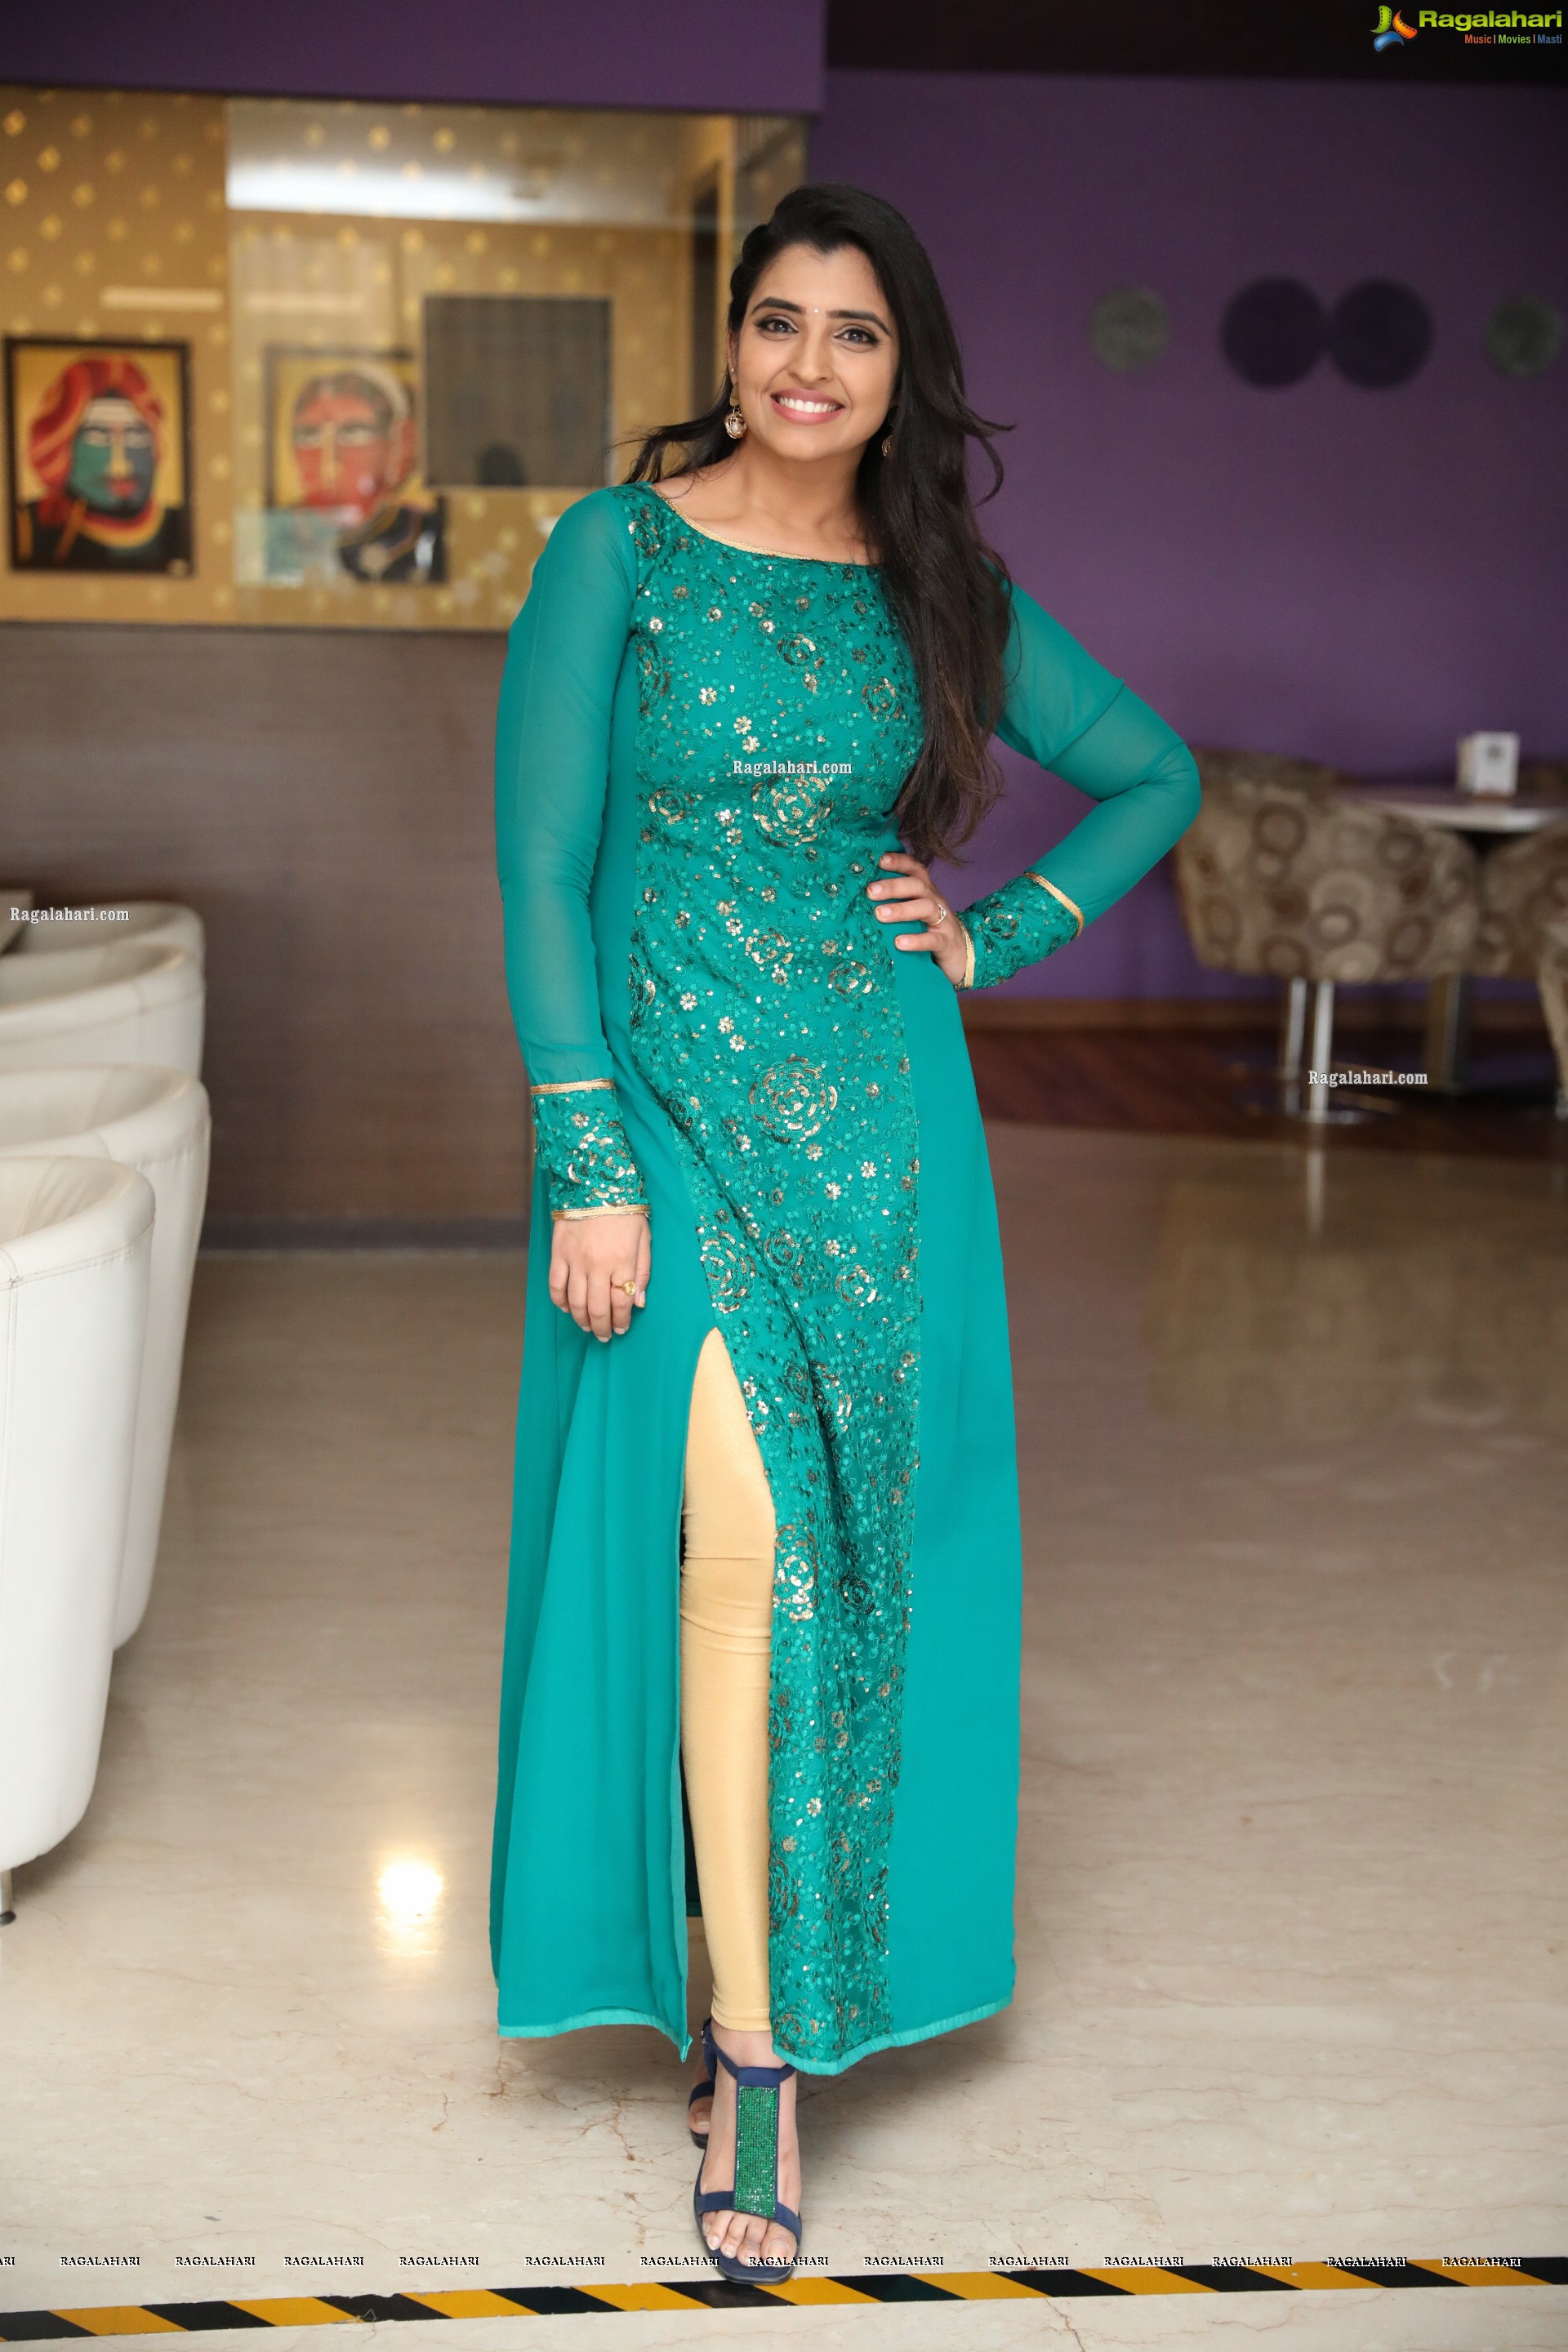 Shyamala in Teal Blue Slit Dress, HD Photo Gallery